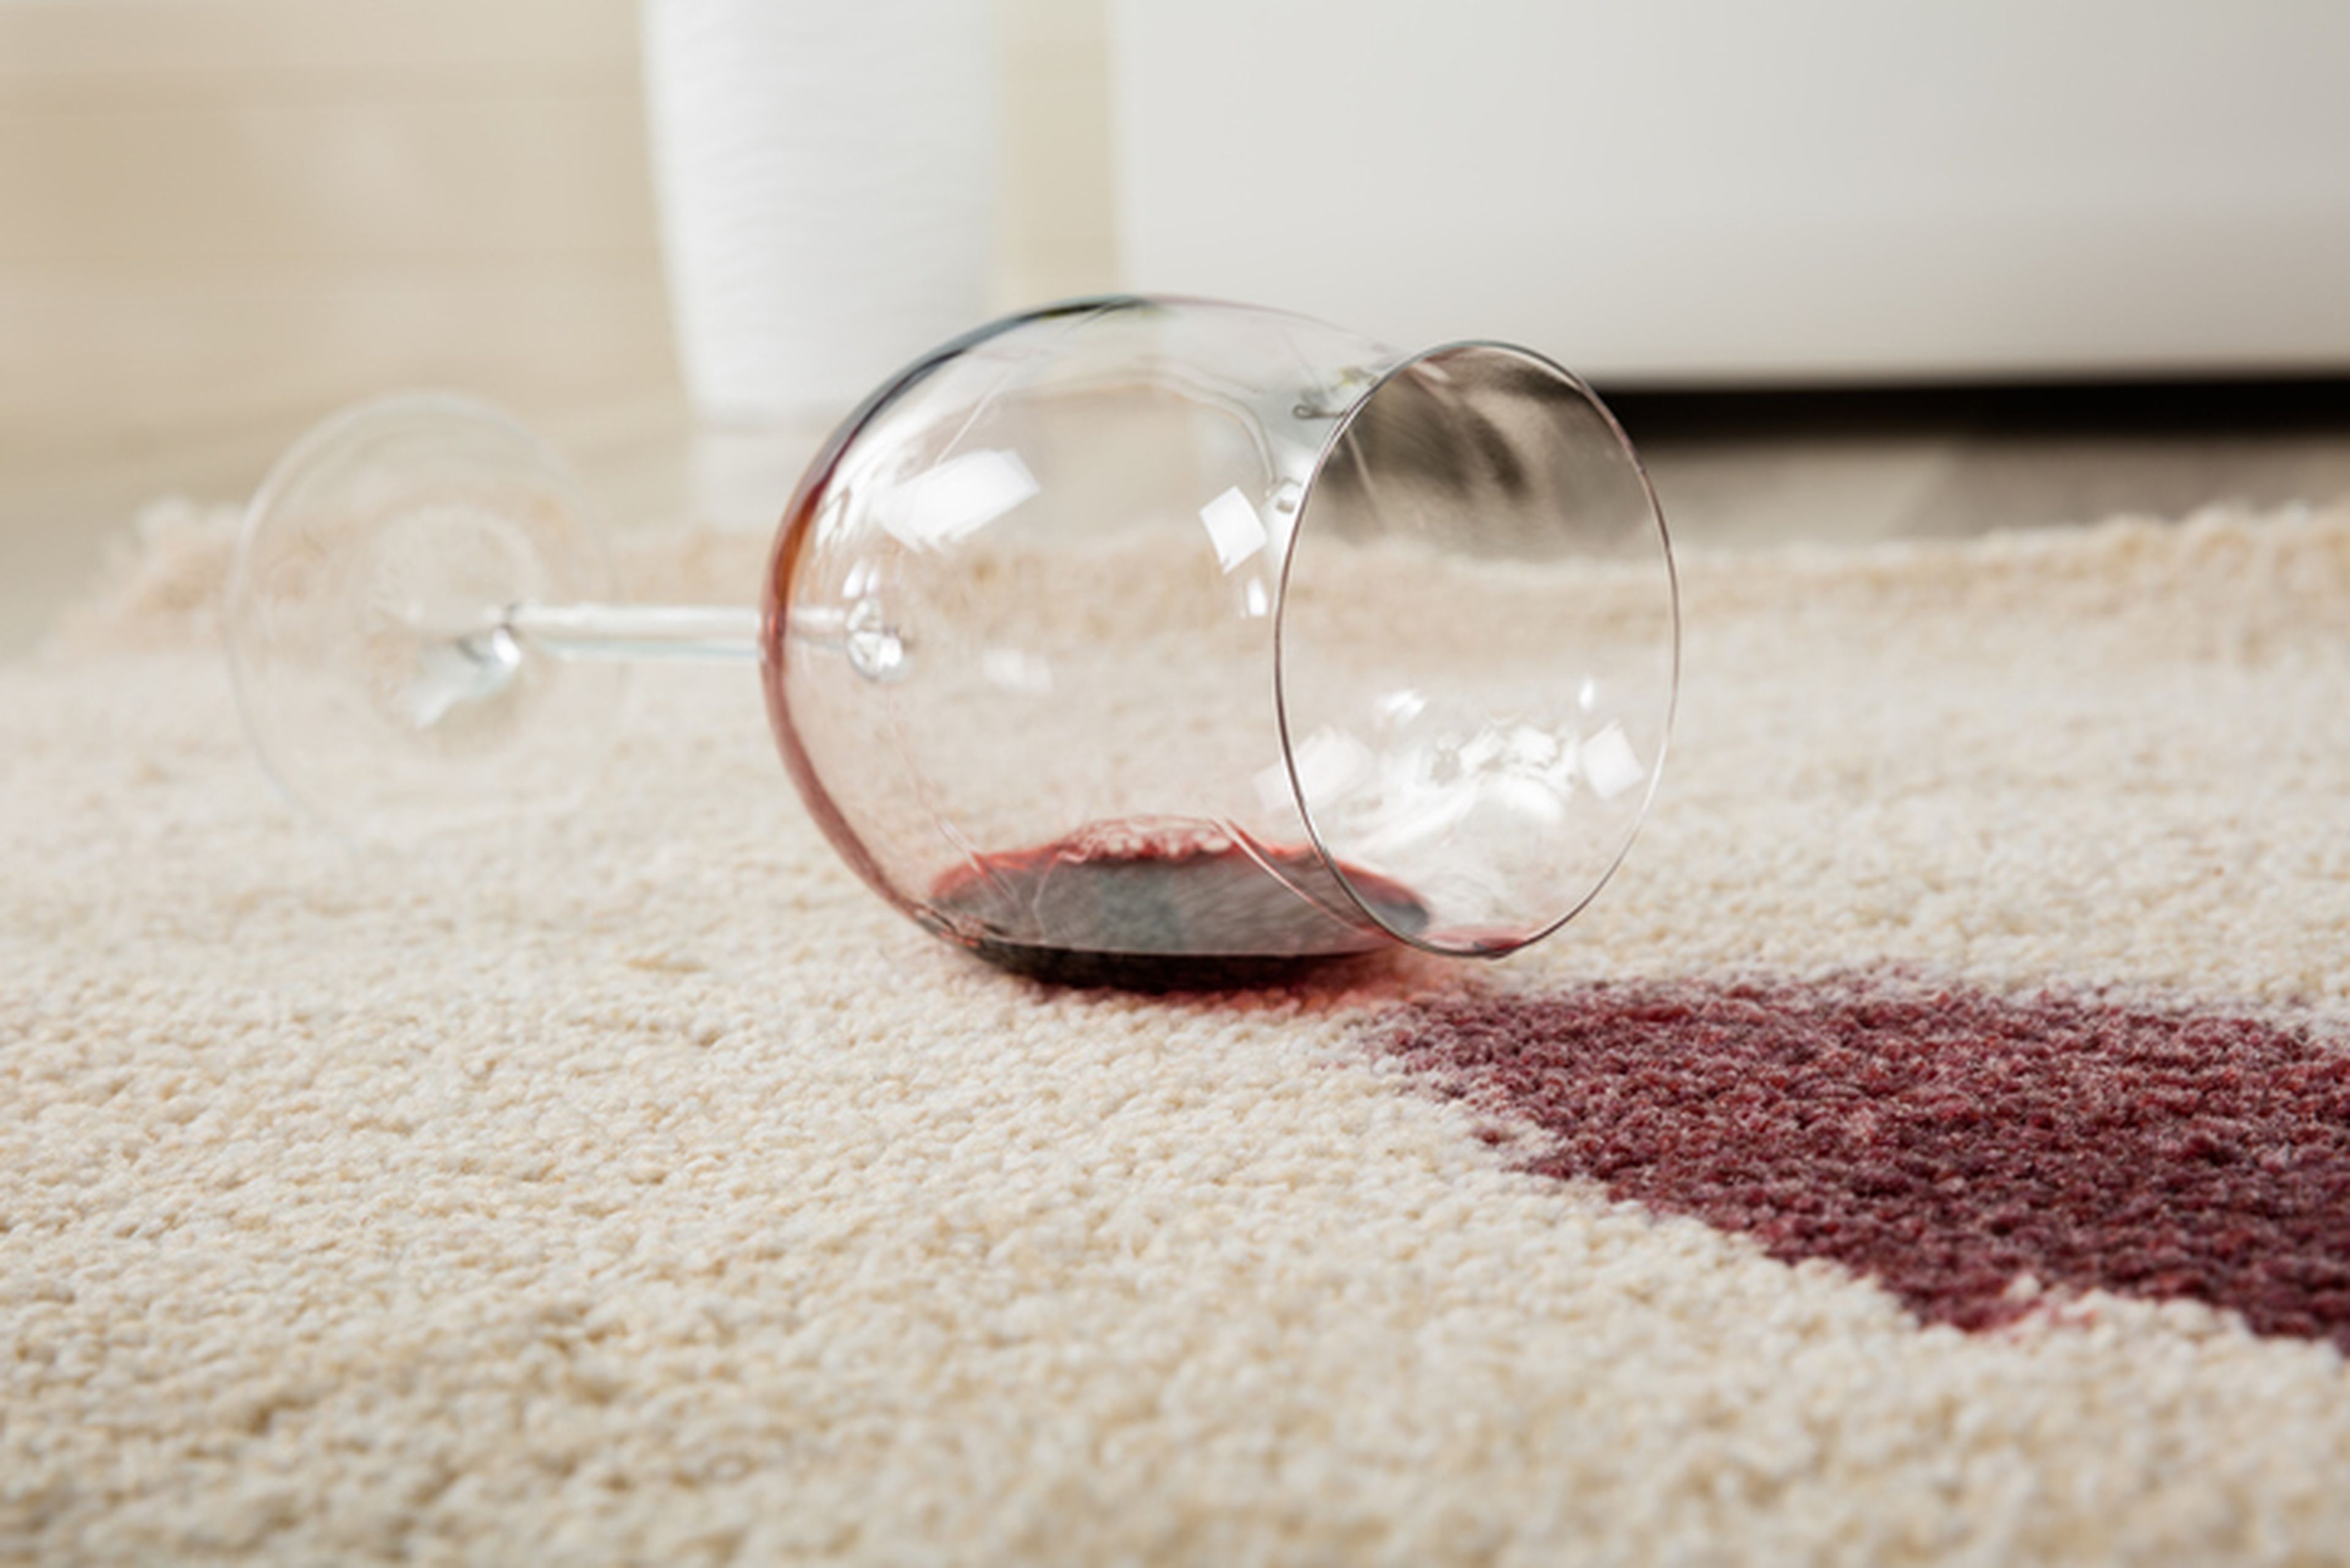 Mancha de vino en la alfombra.